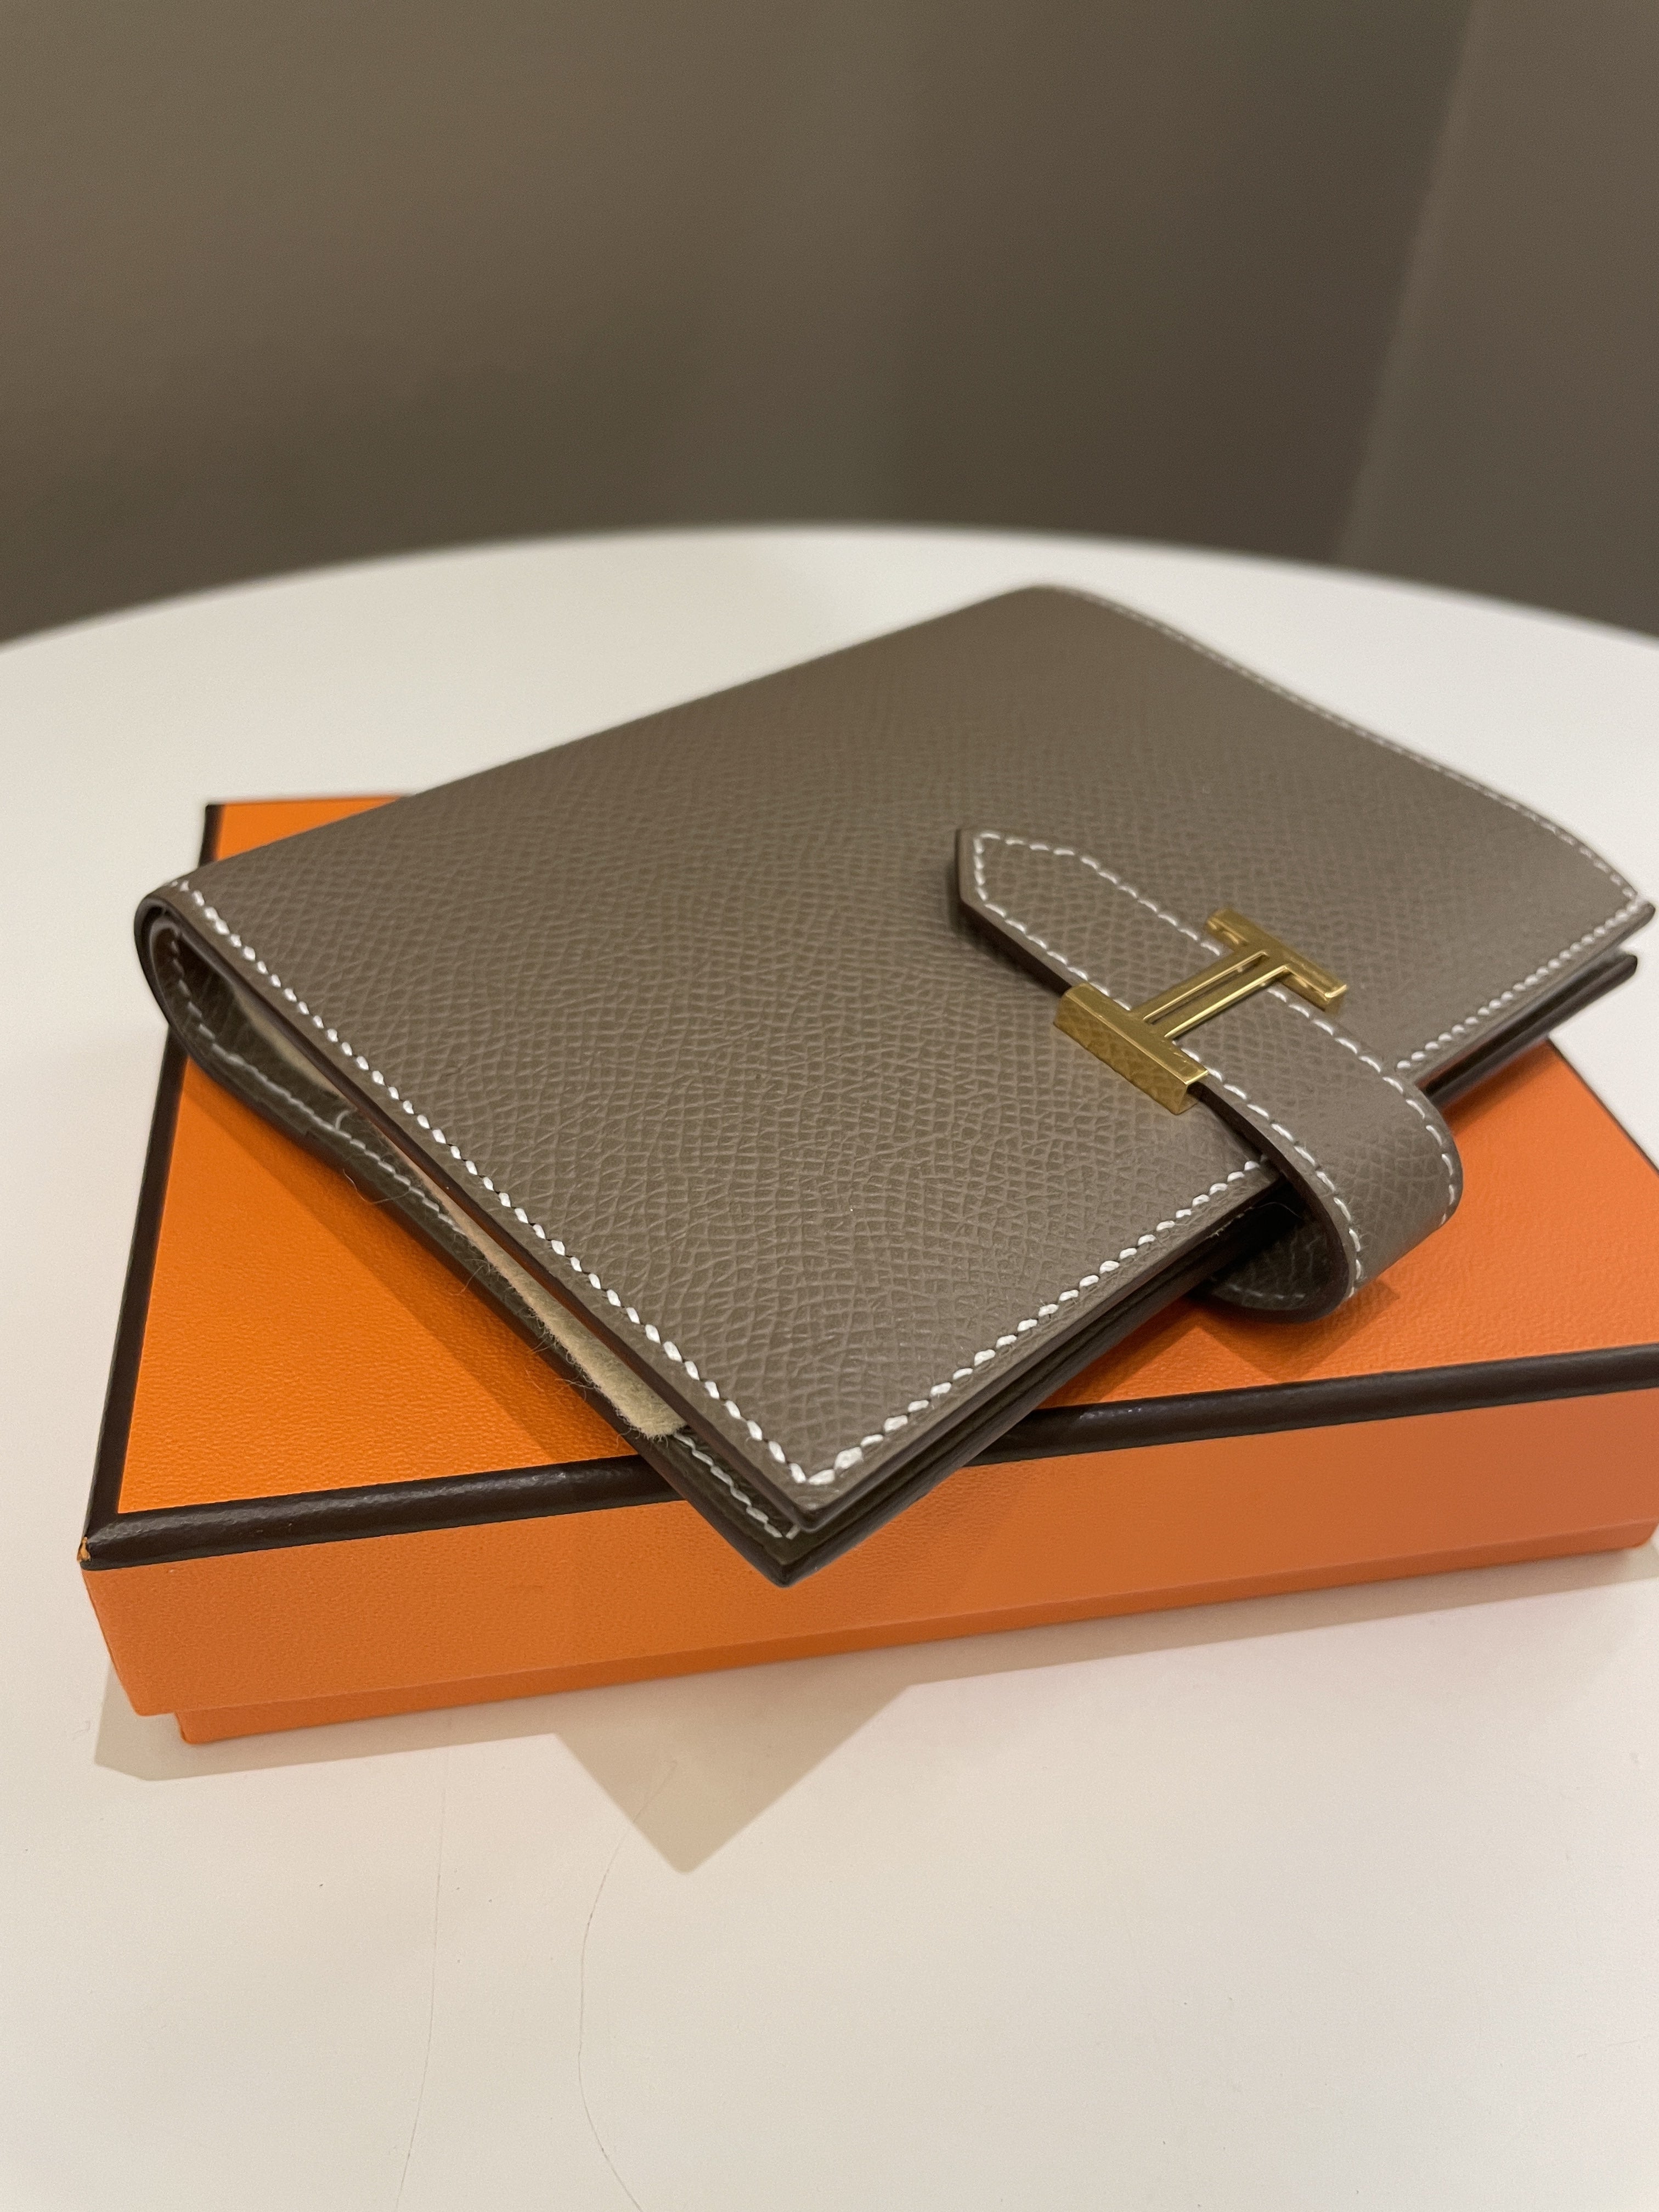 Hermes Bearn Compact Wallet
Etoupe Epsom